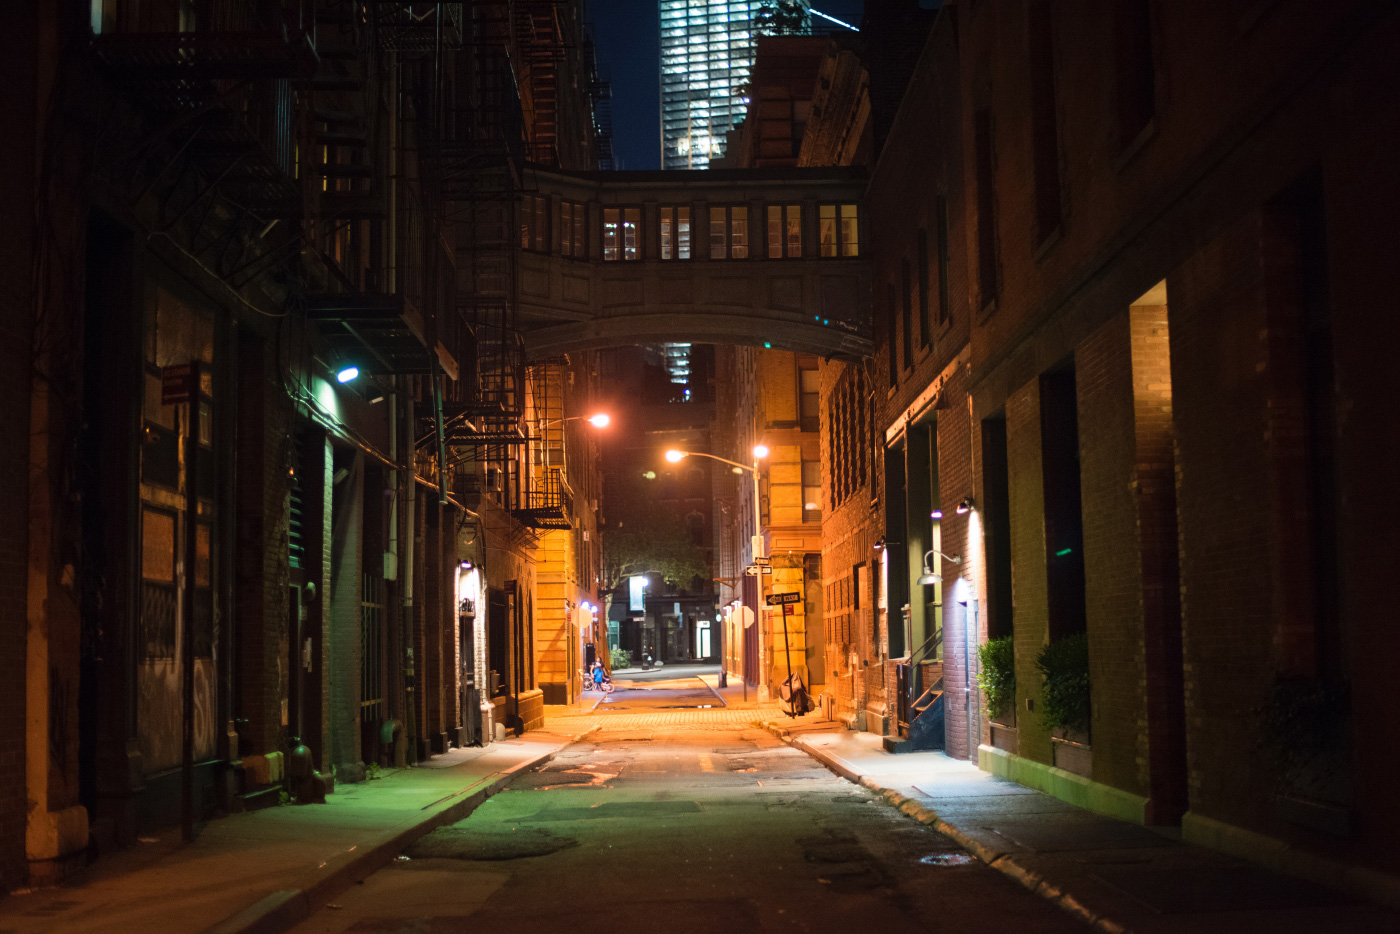 曼哈顿夜晚空荡荡的街道。DDC暂停了公共设计工作